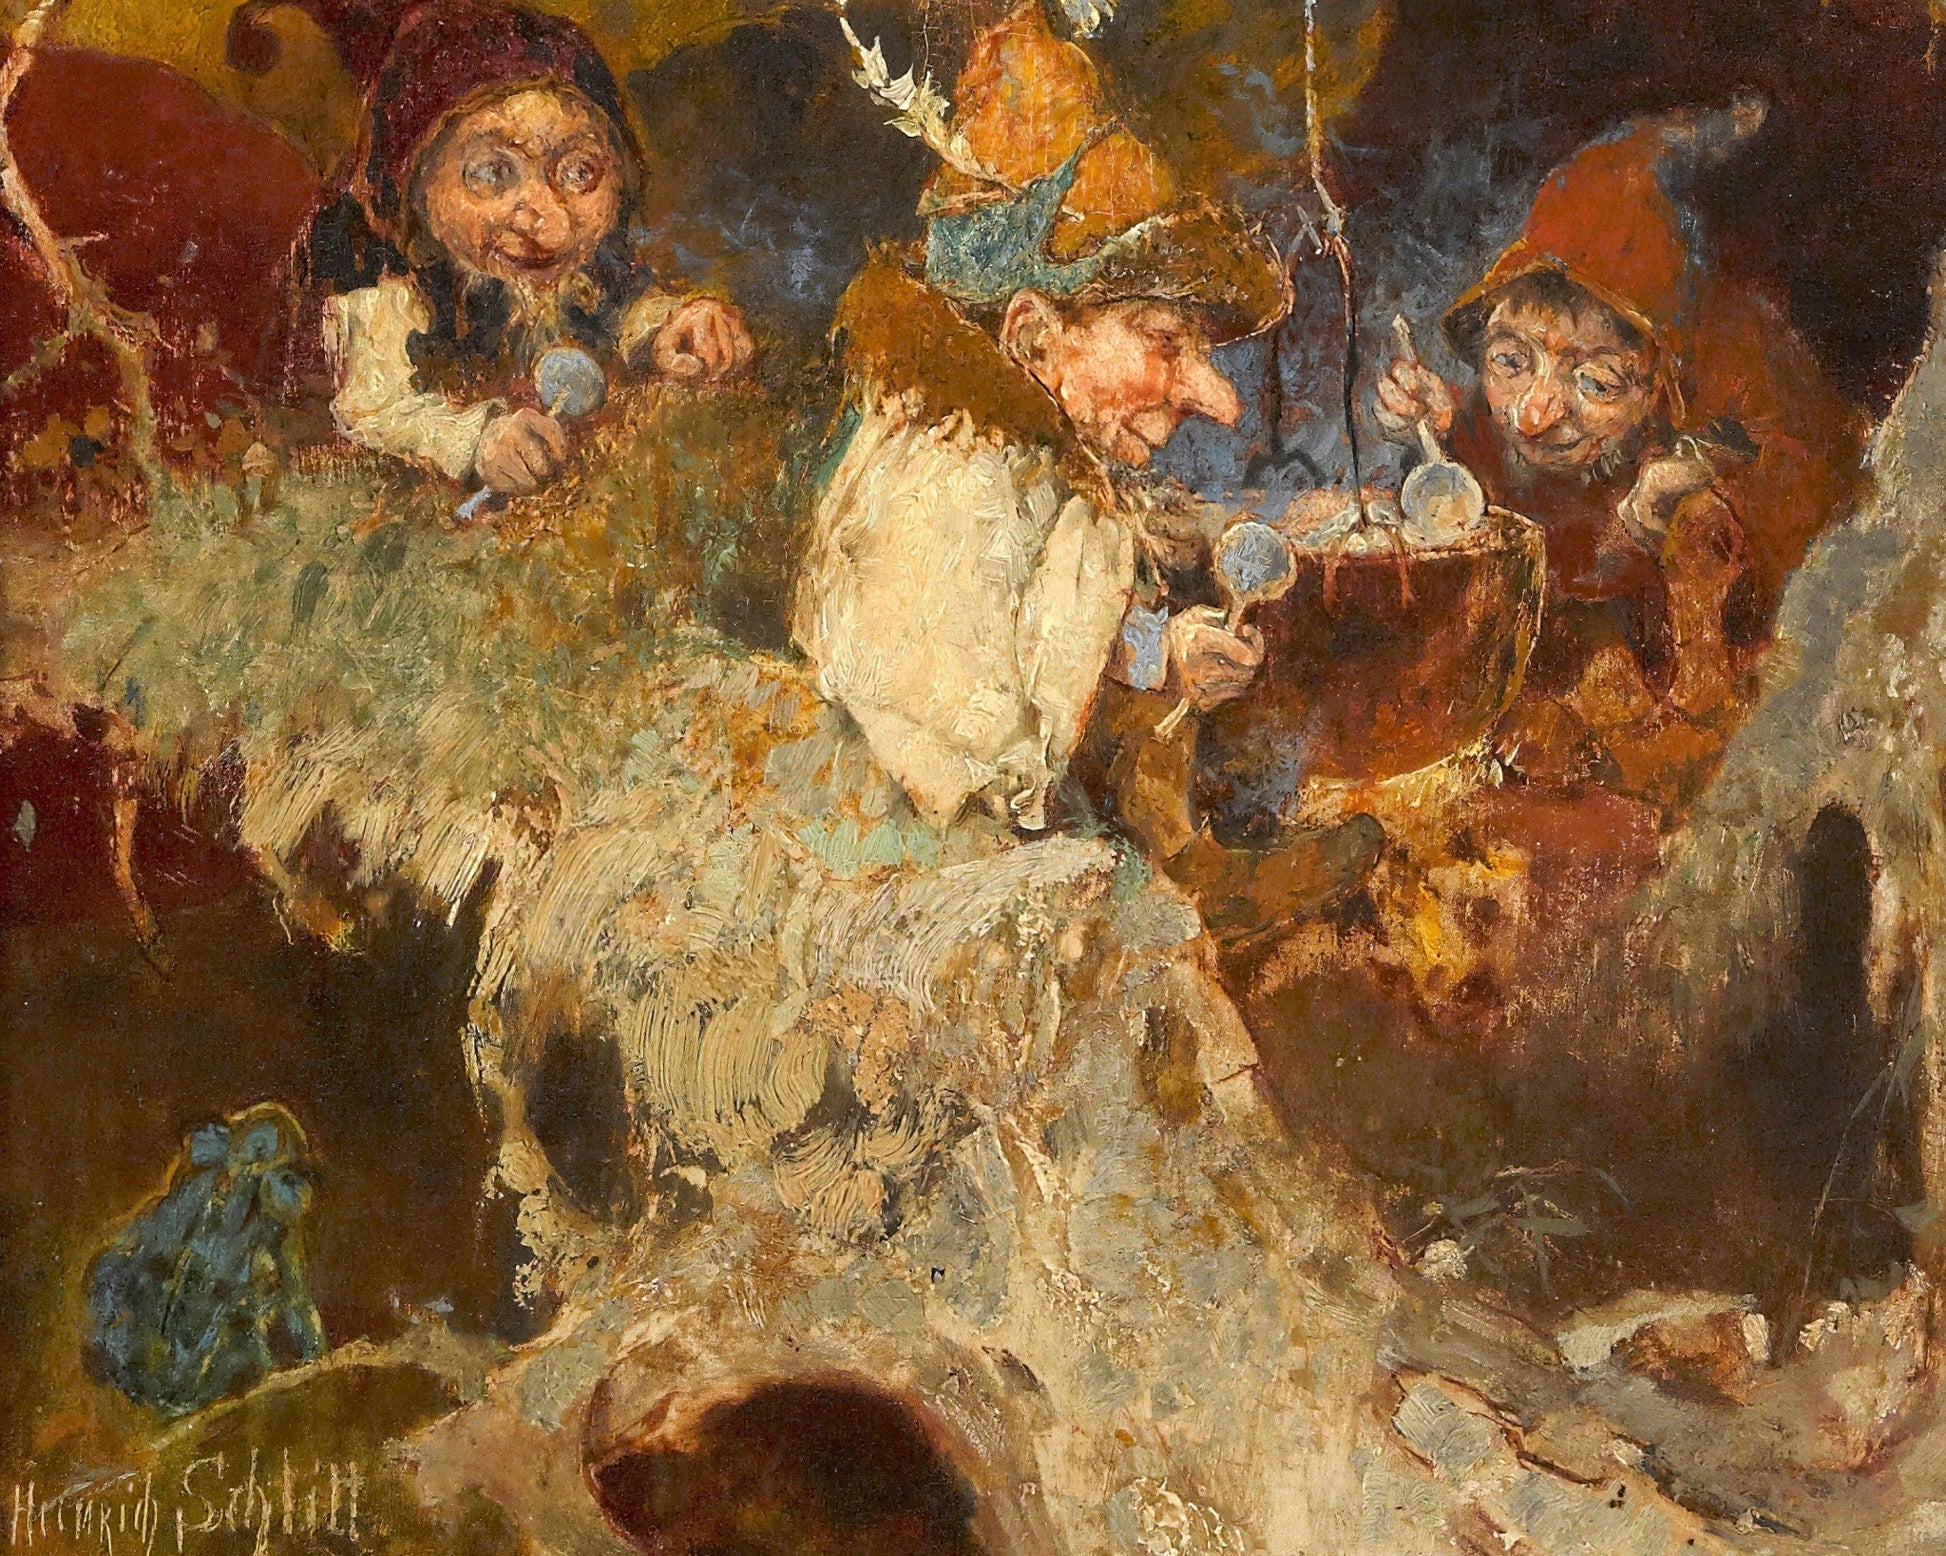 Heinrich Schlitt "Die Zwergensuppe / Gnome Soup" (c.1893) - Mabon Gallery